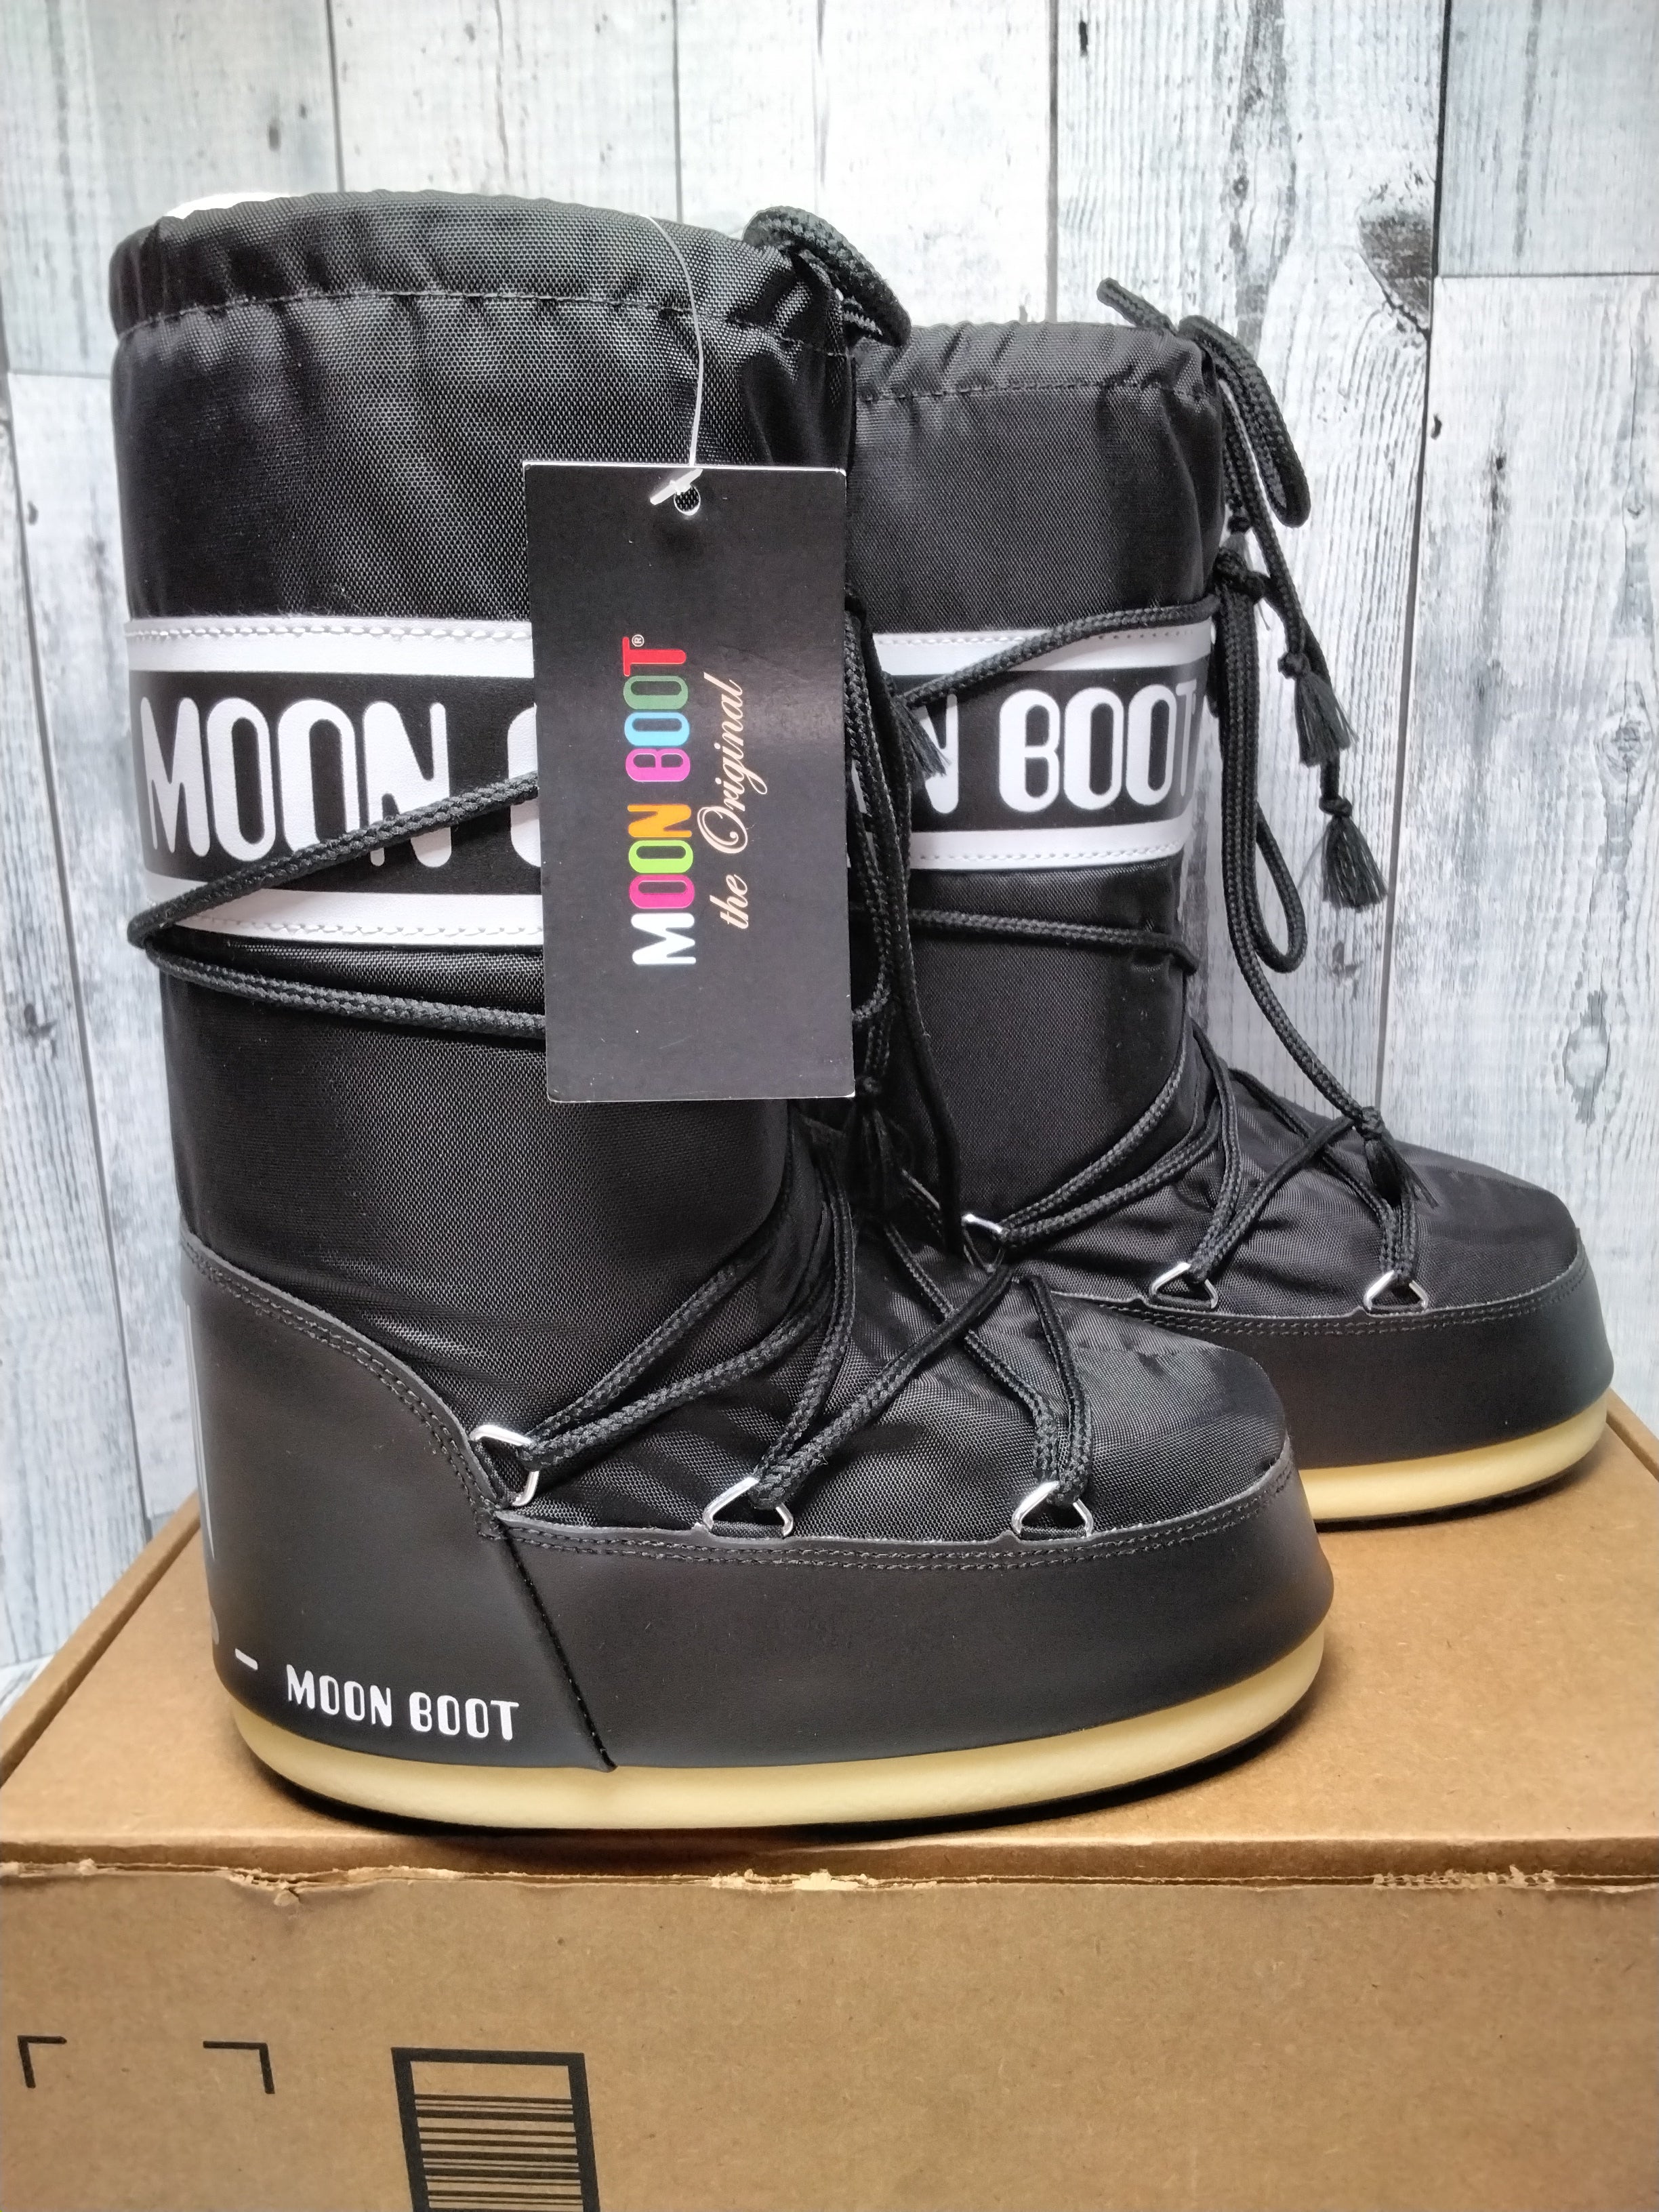 Tecnica The Original Moon Boots, Black, Sz 13.5C - 2.5Y (7782270304494)